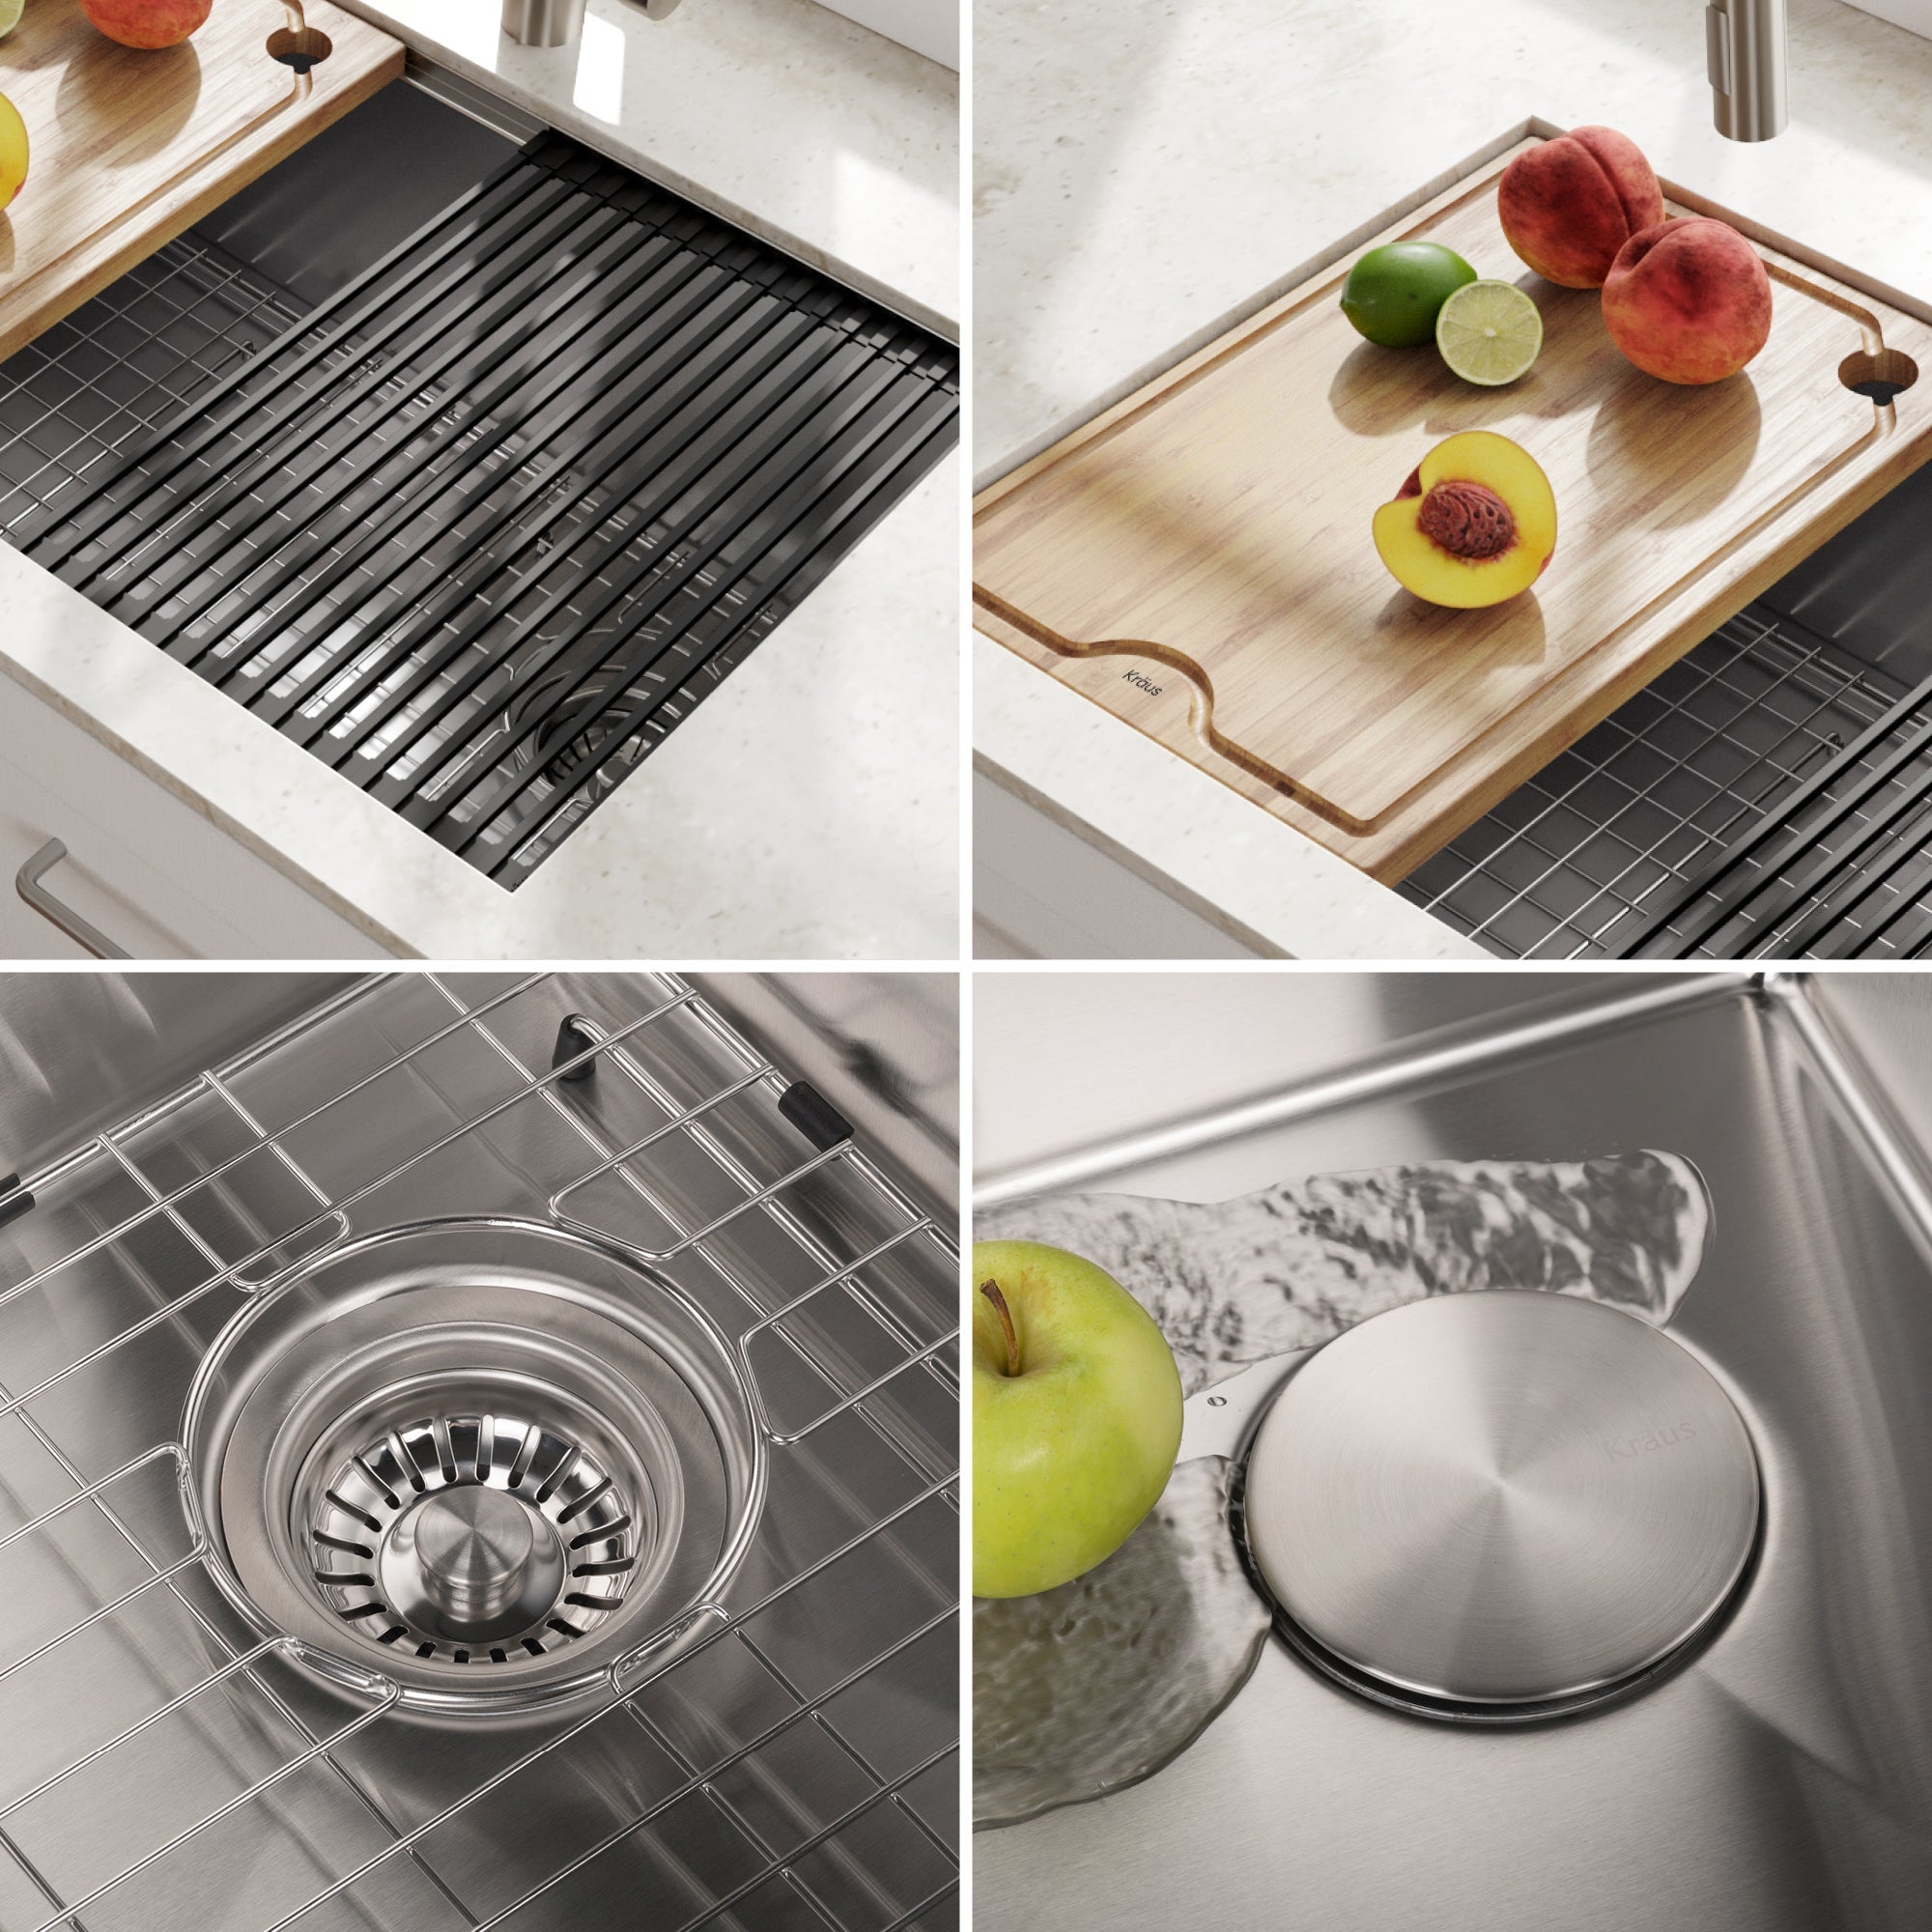 KRAUS Kore Workstation 32" Undermount 16 Gauge Single Bowl Stainless Steel Kitchen Sink with Accessories-Kitchen Sinks-DirectSinks